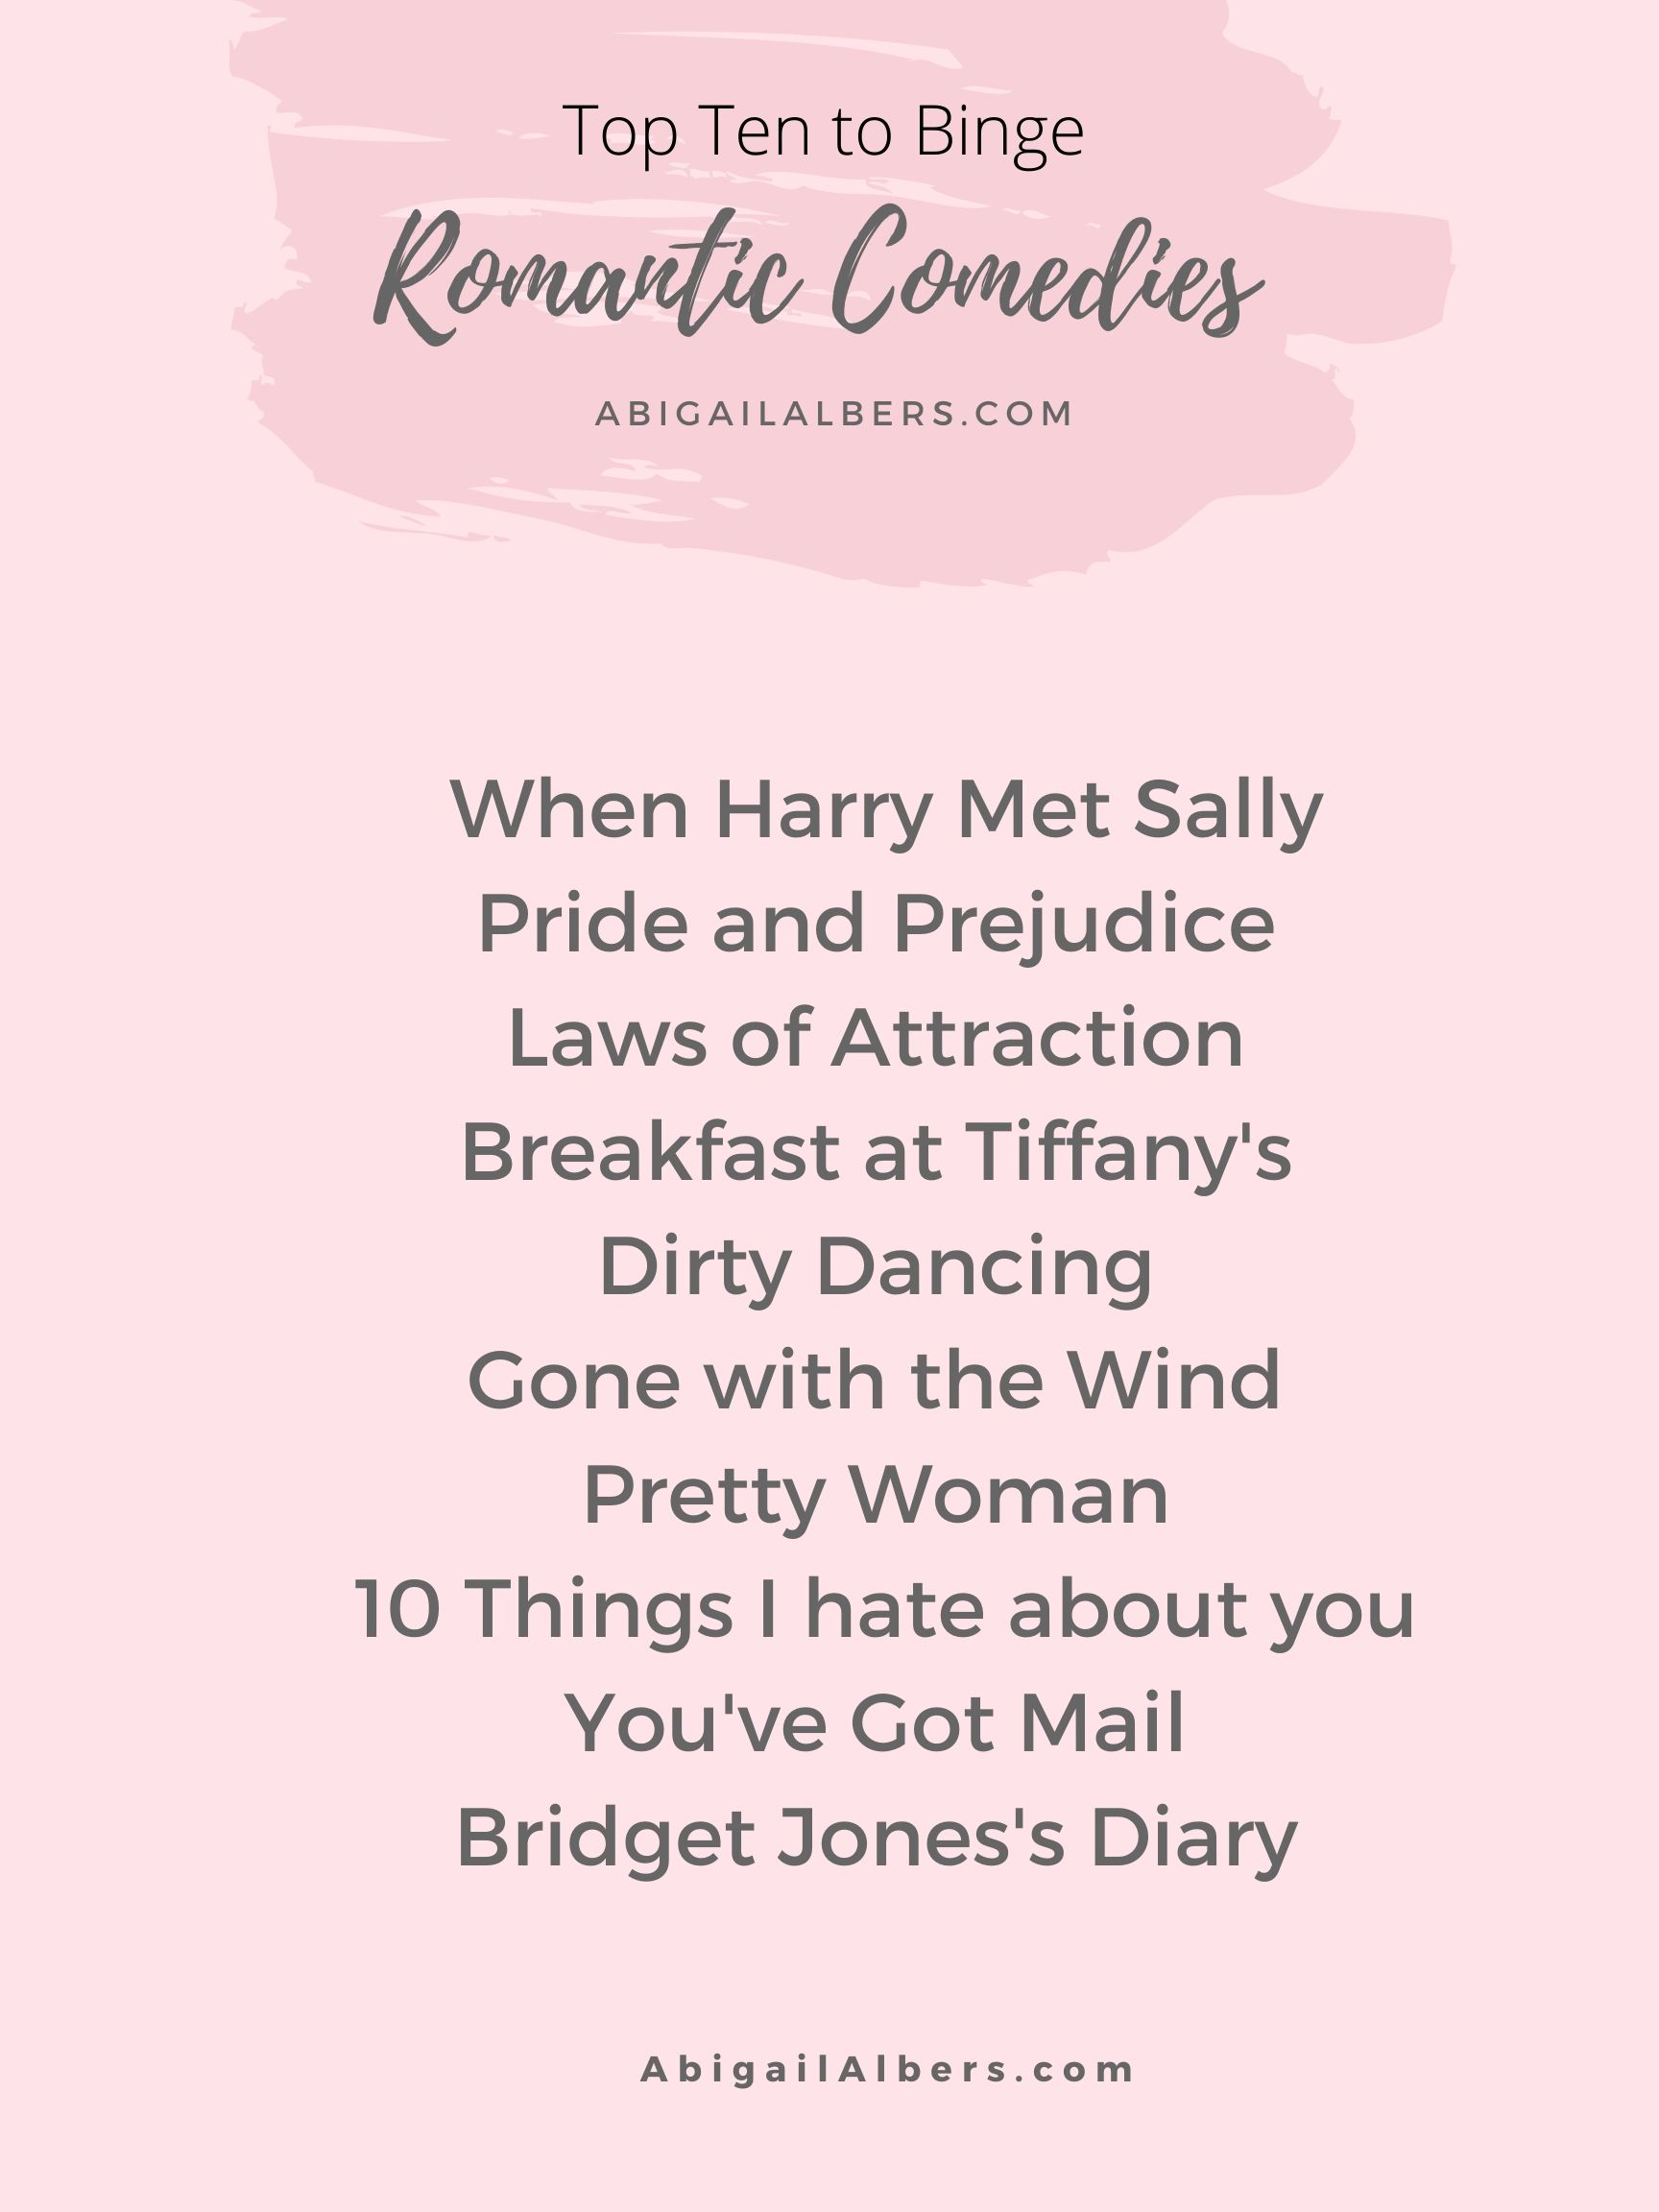 Top Ten Romantic COmedies to binge now 